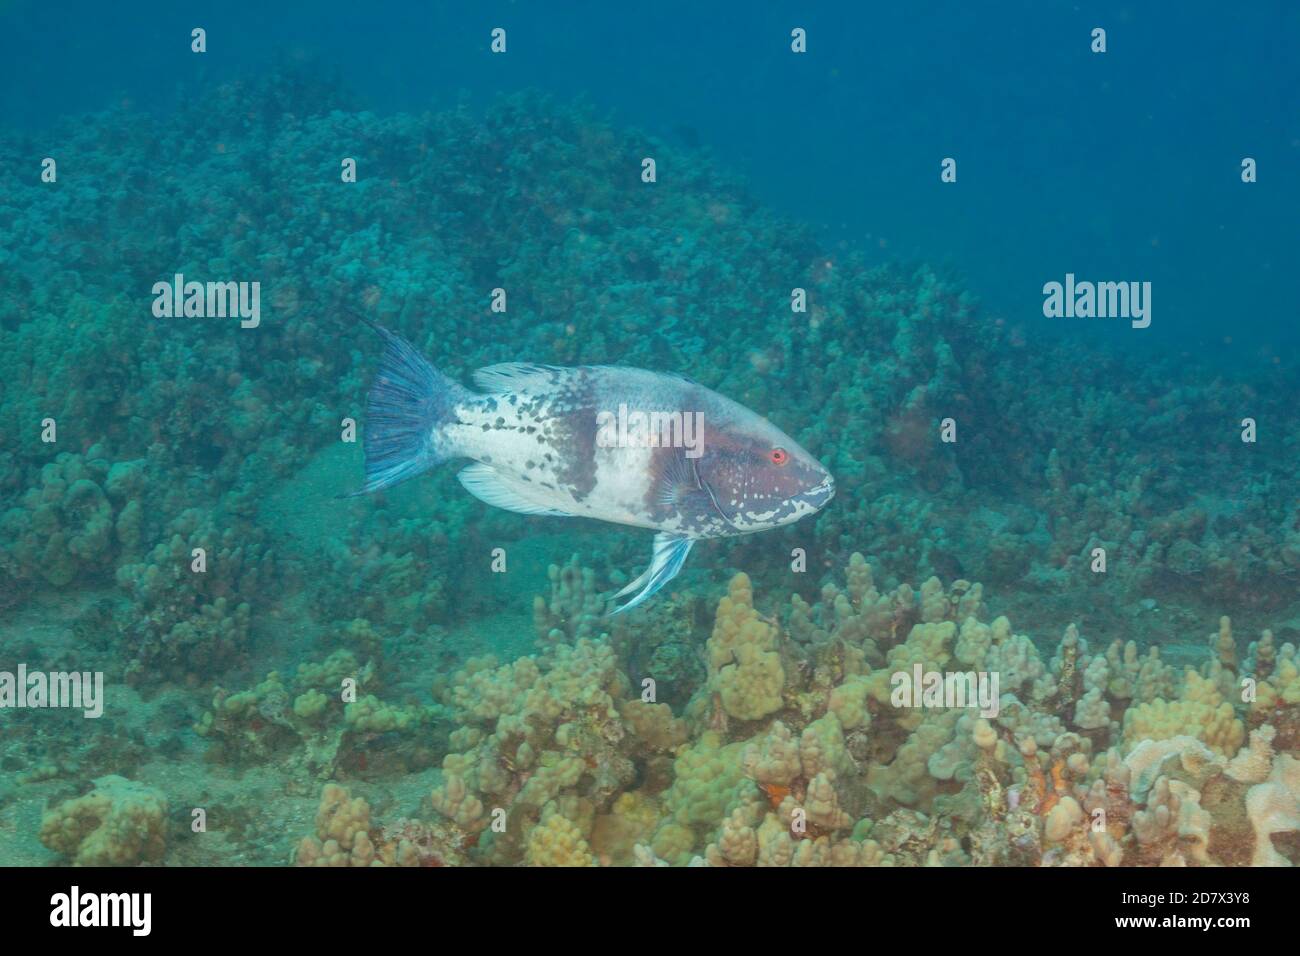 Der endliche männliche hawaiianische Hogfisch, Bodianus albotaeniatus, wird von Tauchern nicht oft gesehen, da er sich während seiner Reifung in tieferes Wasser bewegt. Dieser Fisch ist Ende Stockfoto